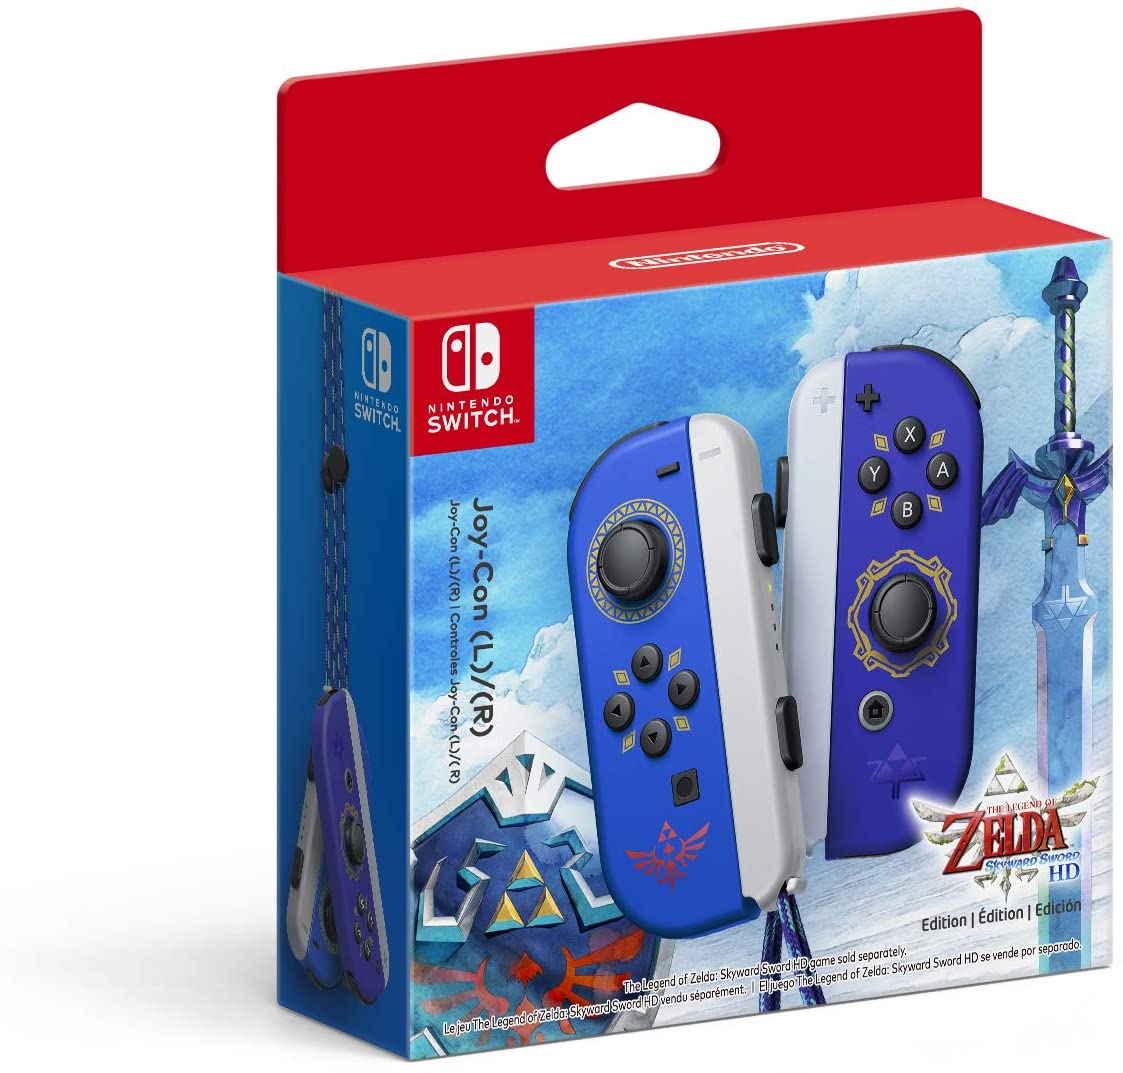 Controles Joy-Con edición The Legend of Zelda: Skyward Sword HD (color azul, izquierdo y derecho)